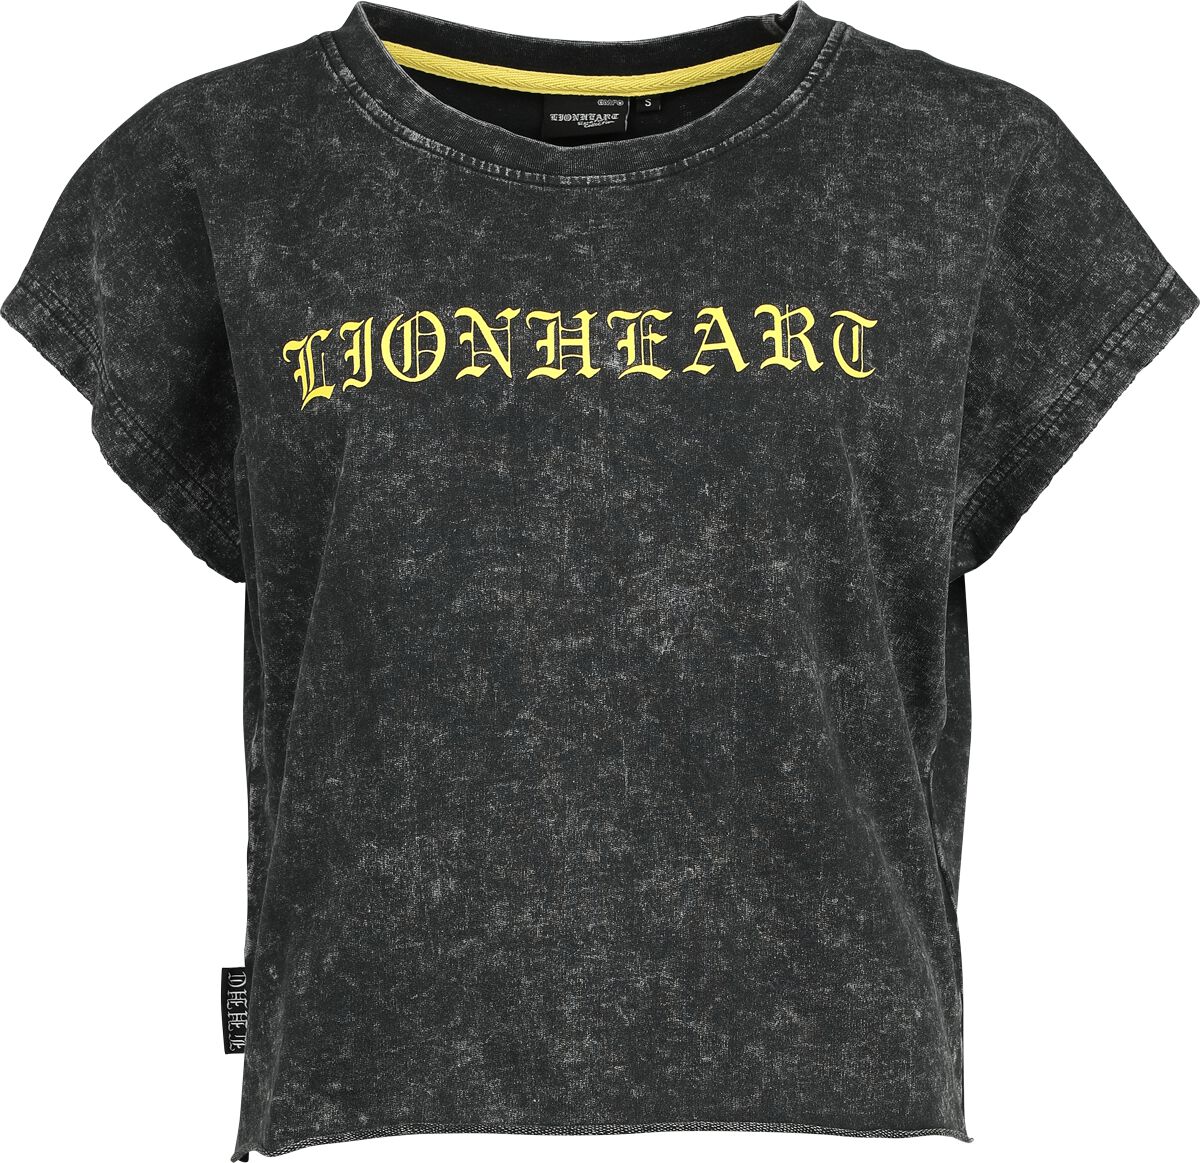 Lionheart T-Shirt - EMP Signature Collection - XS bis 3XL - für Damen - Größe XXL - grau  - EMP exklusives Merchandise!